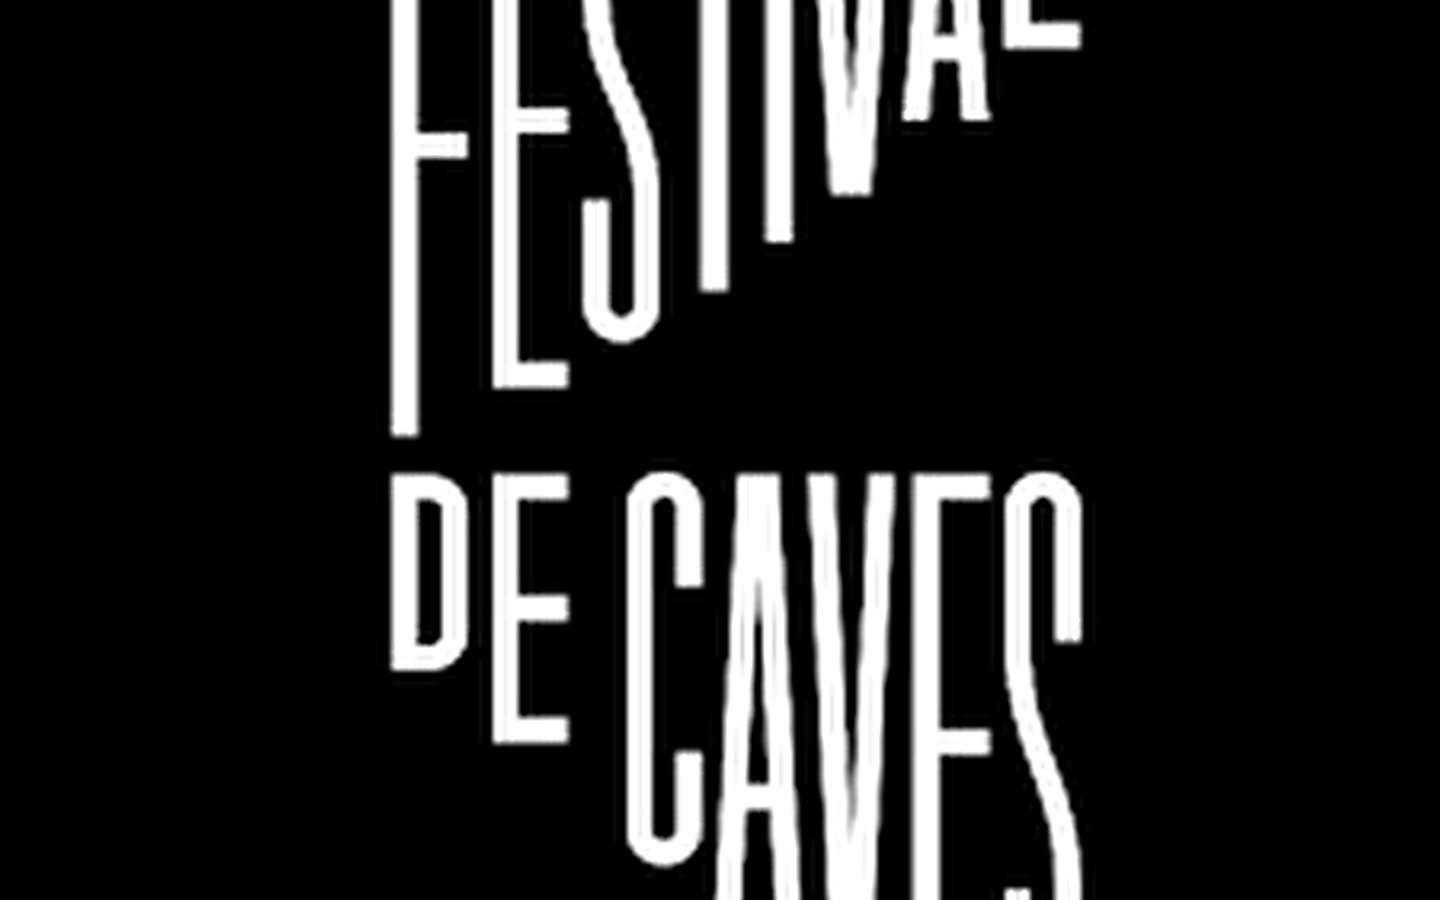 Festival of cellars at the Musée des Maisons Comtoises